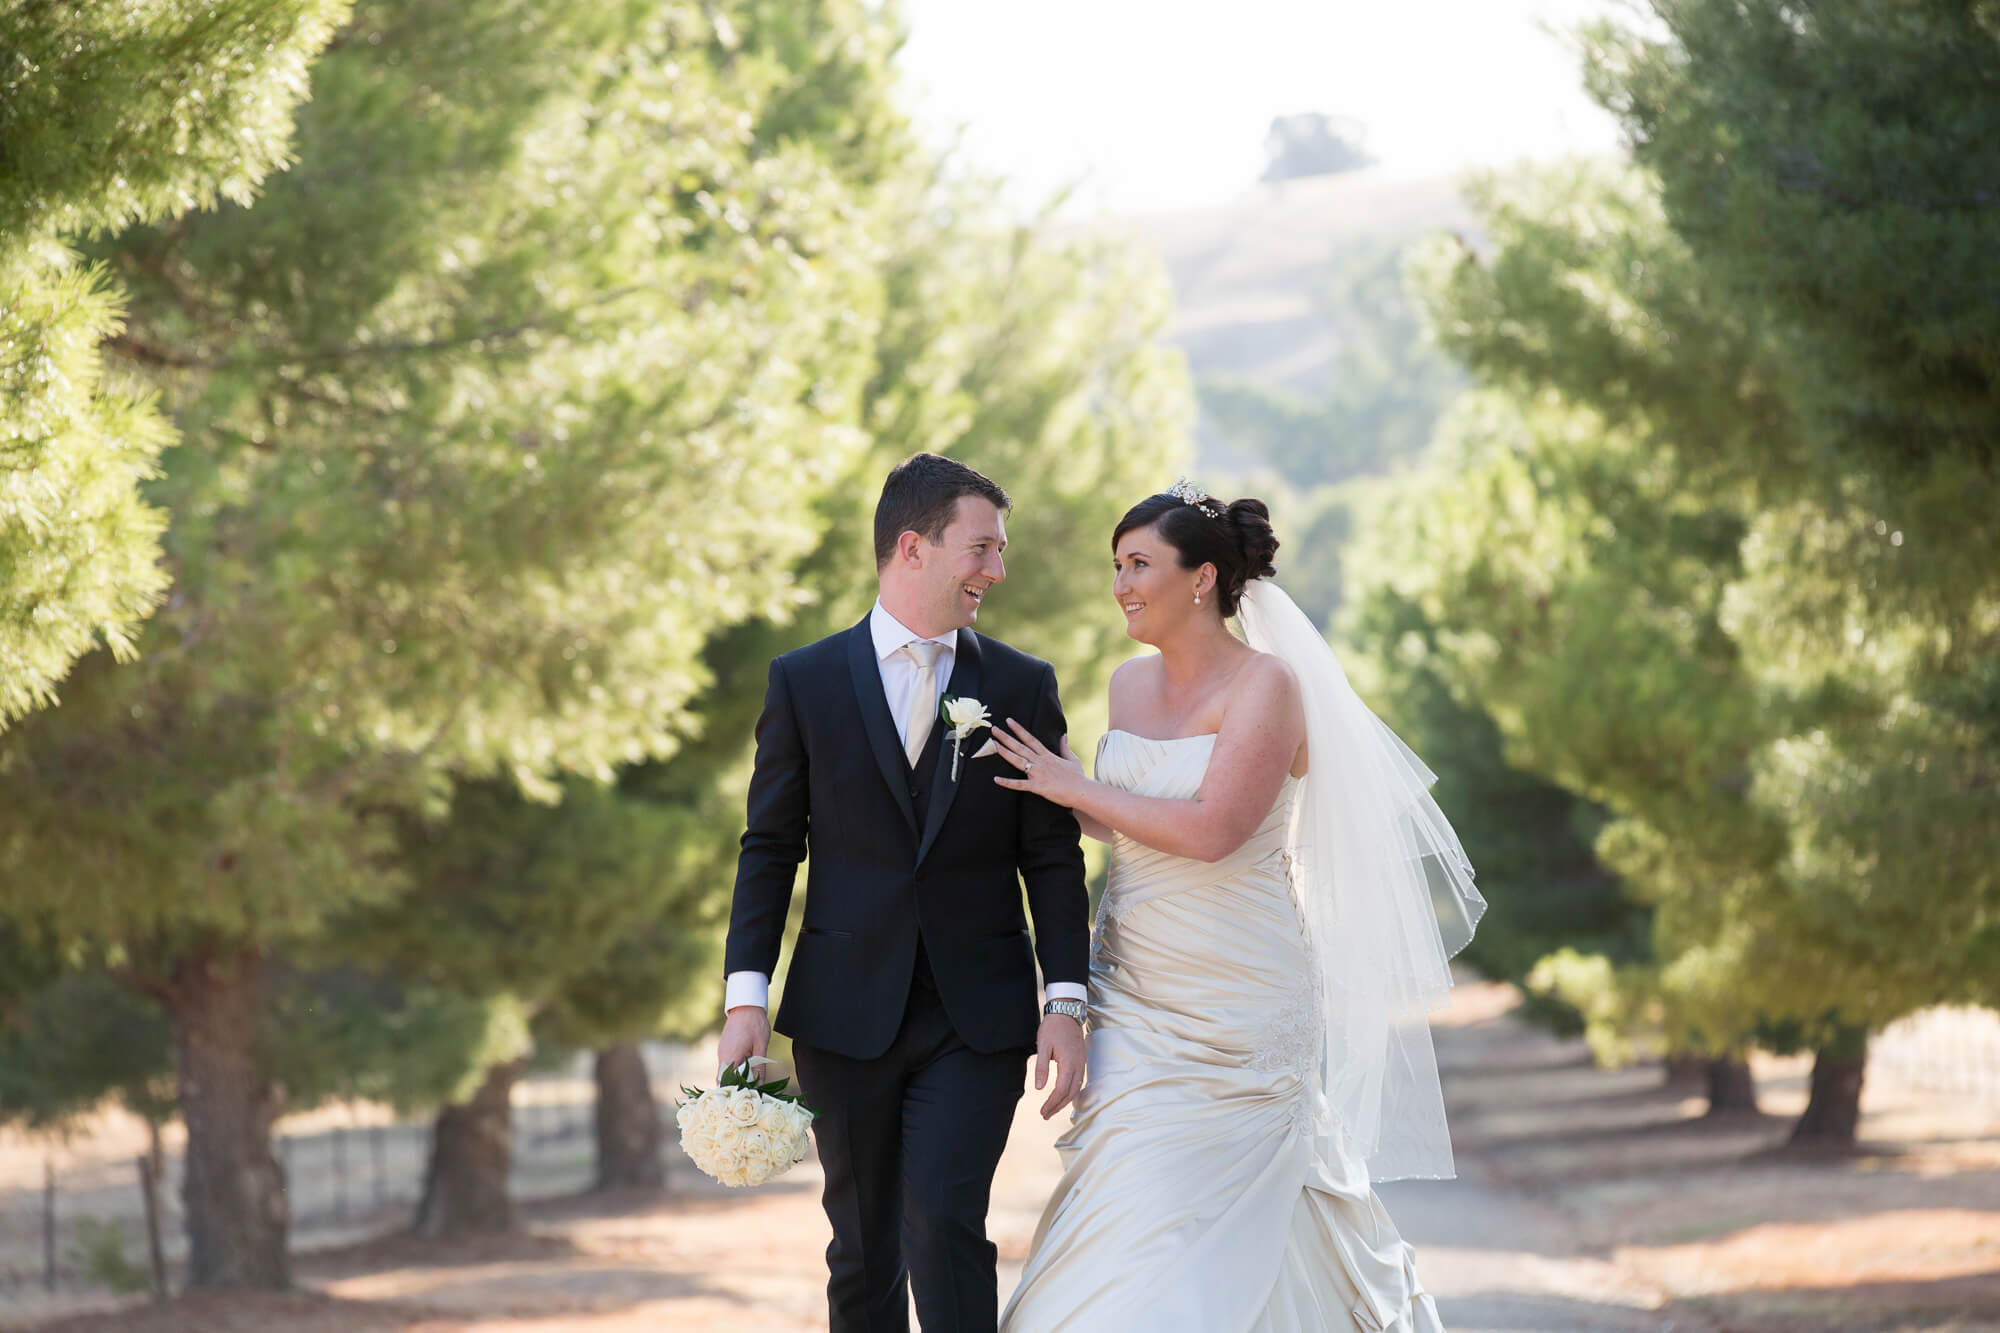 Sarah and Matthew – Wedding Photography